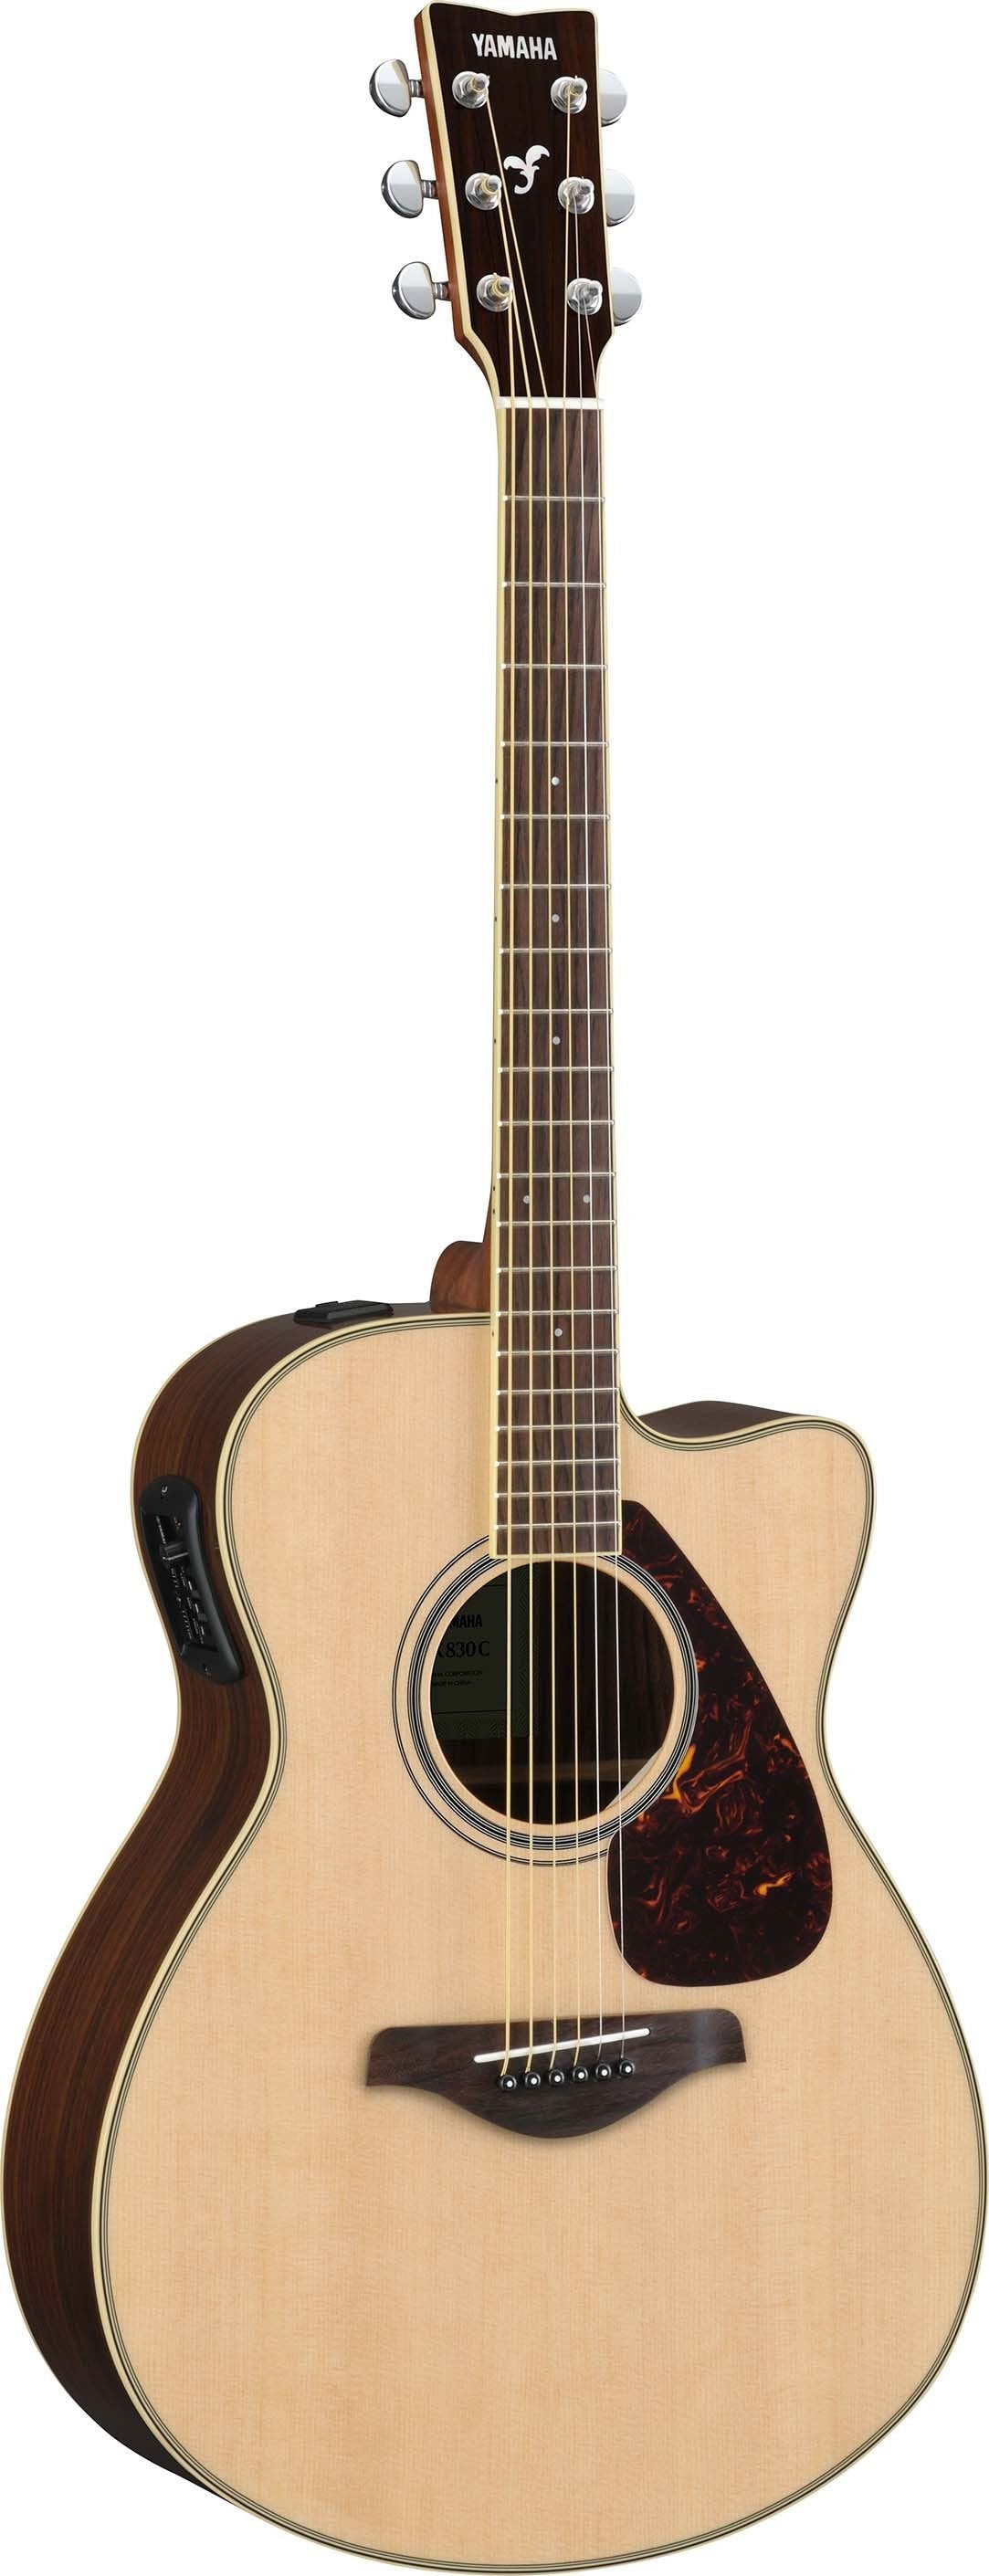 Yamaha FSX830C Concert Cutaway Acoustic/Electric Guitar - Natural